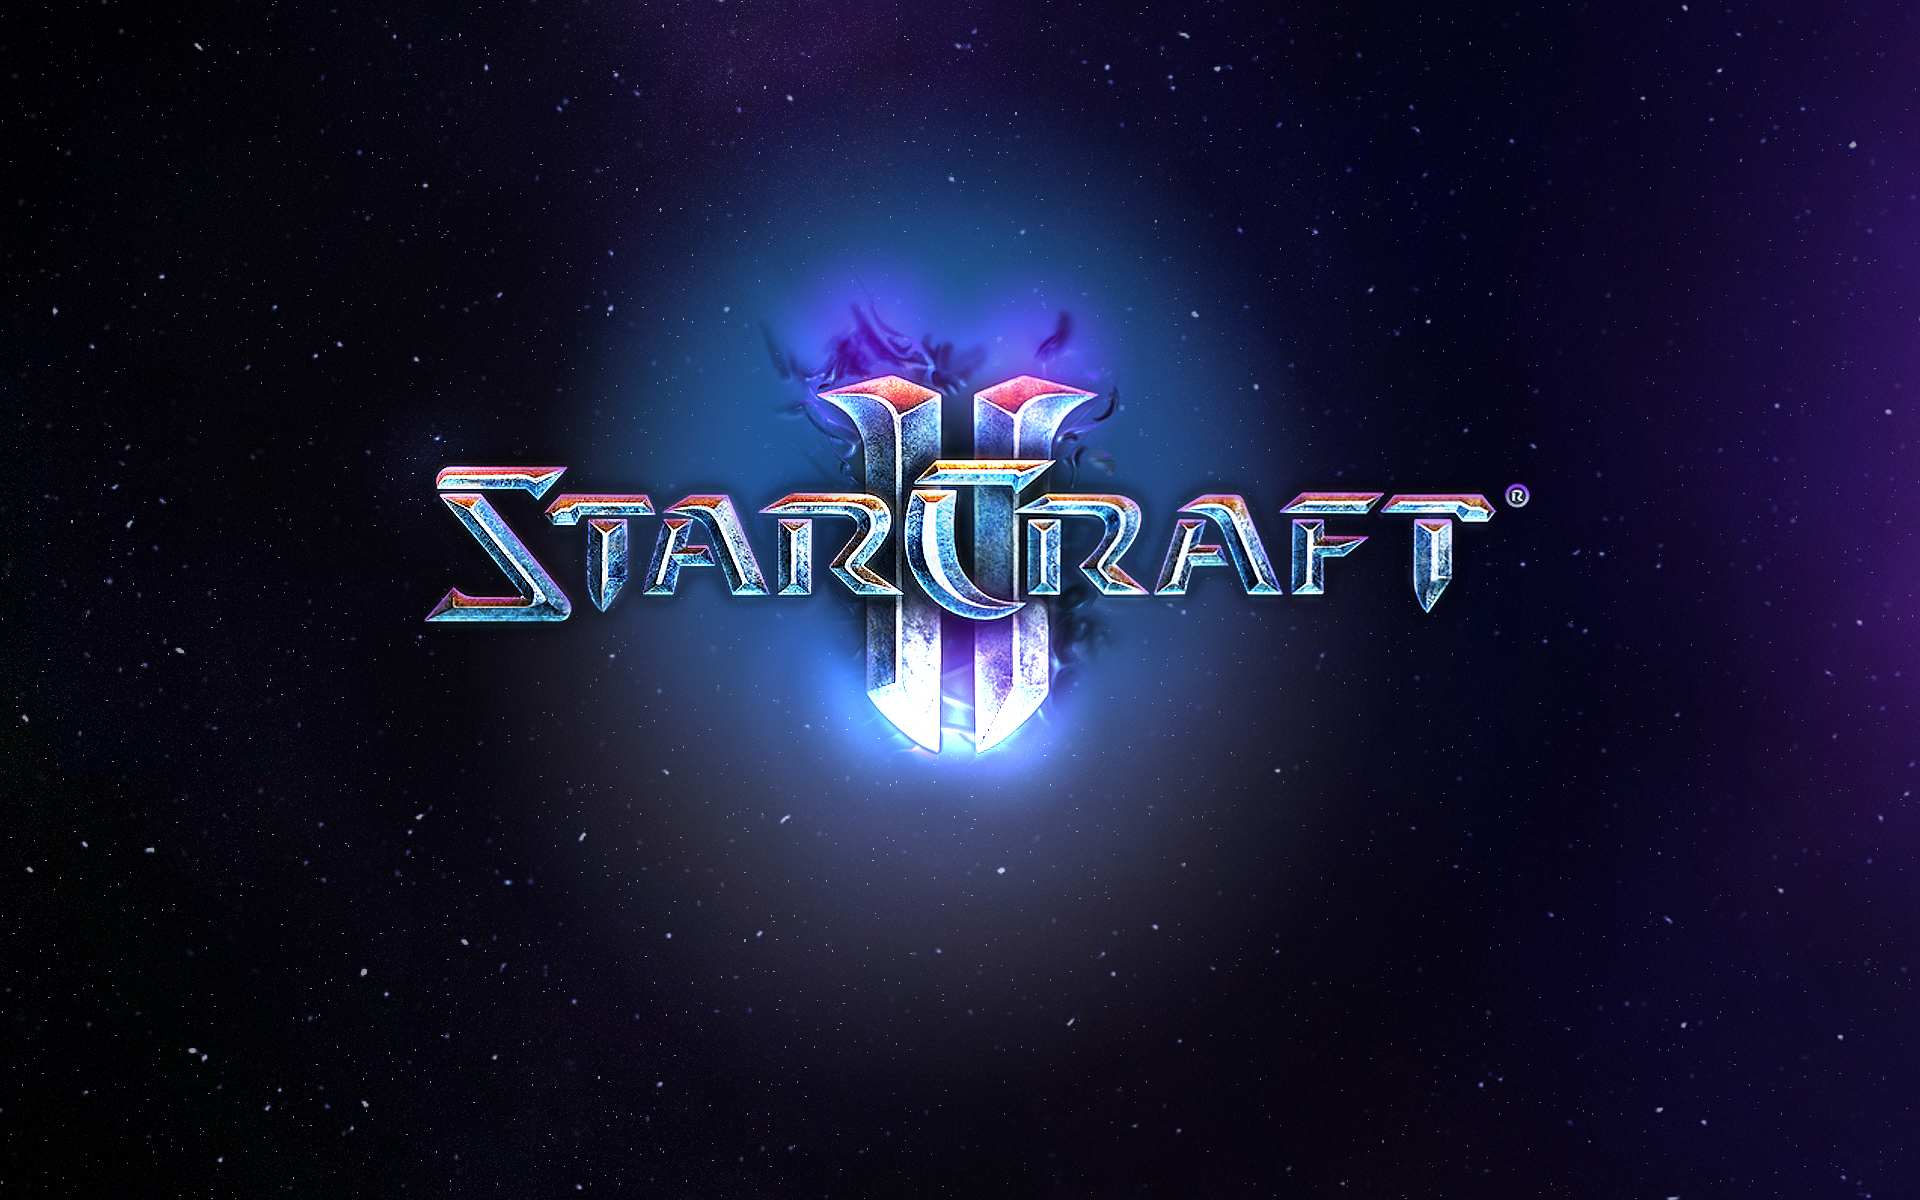 StarCraft 2 wallpapers | StarCraft 2 stock photos